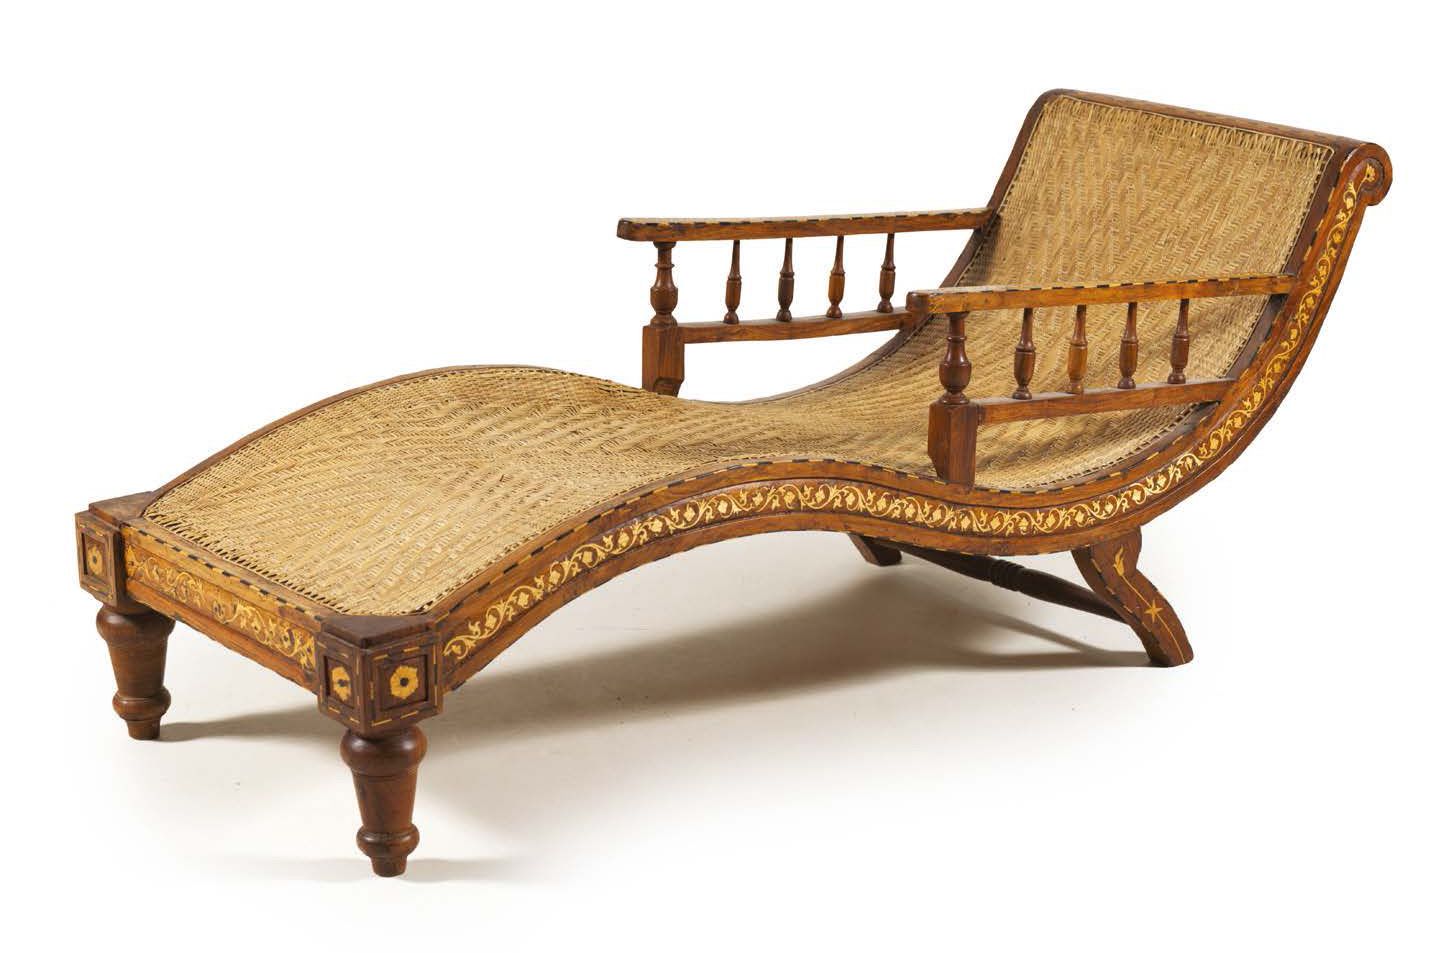 Null 殖民主义风格的休闲椅。木嵌骨。
印度，20世纪。
长_173厘米，深_65厘米